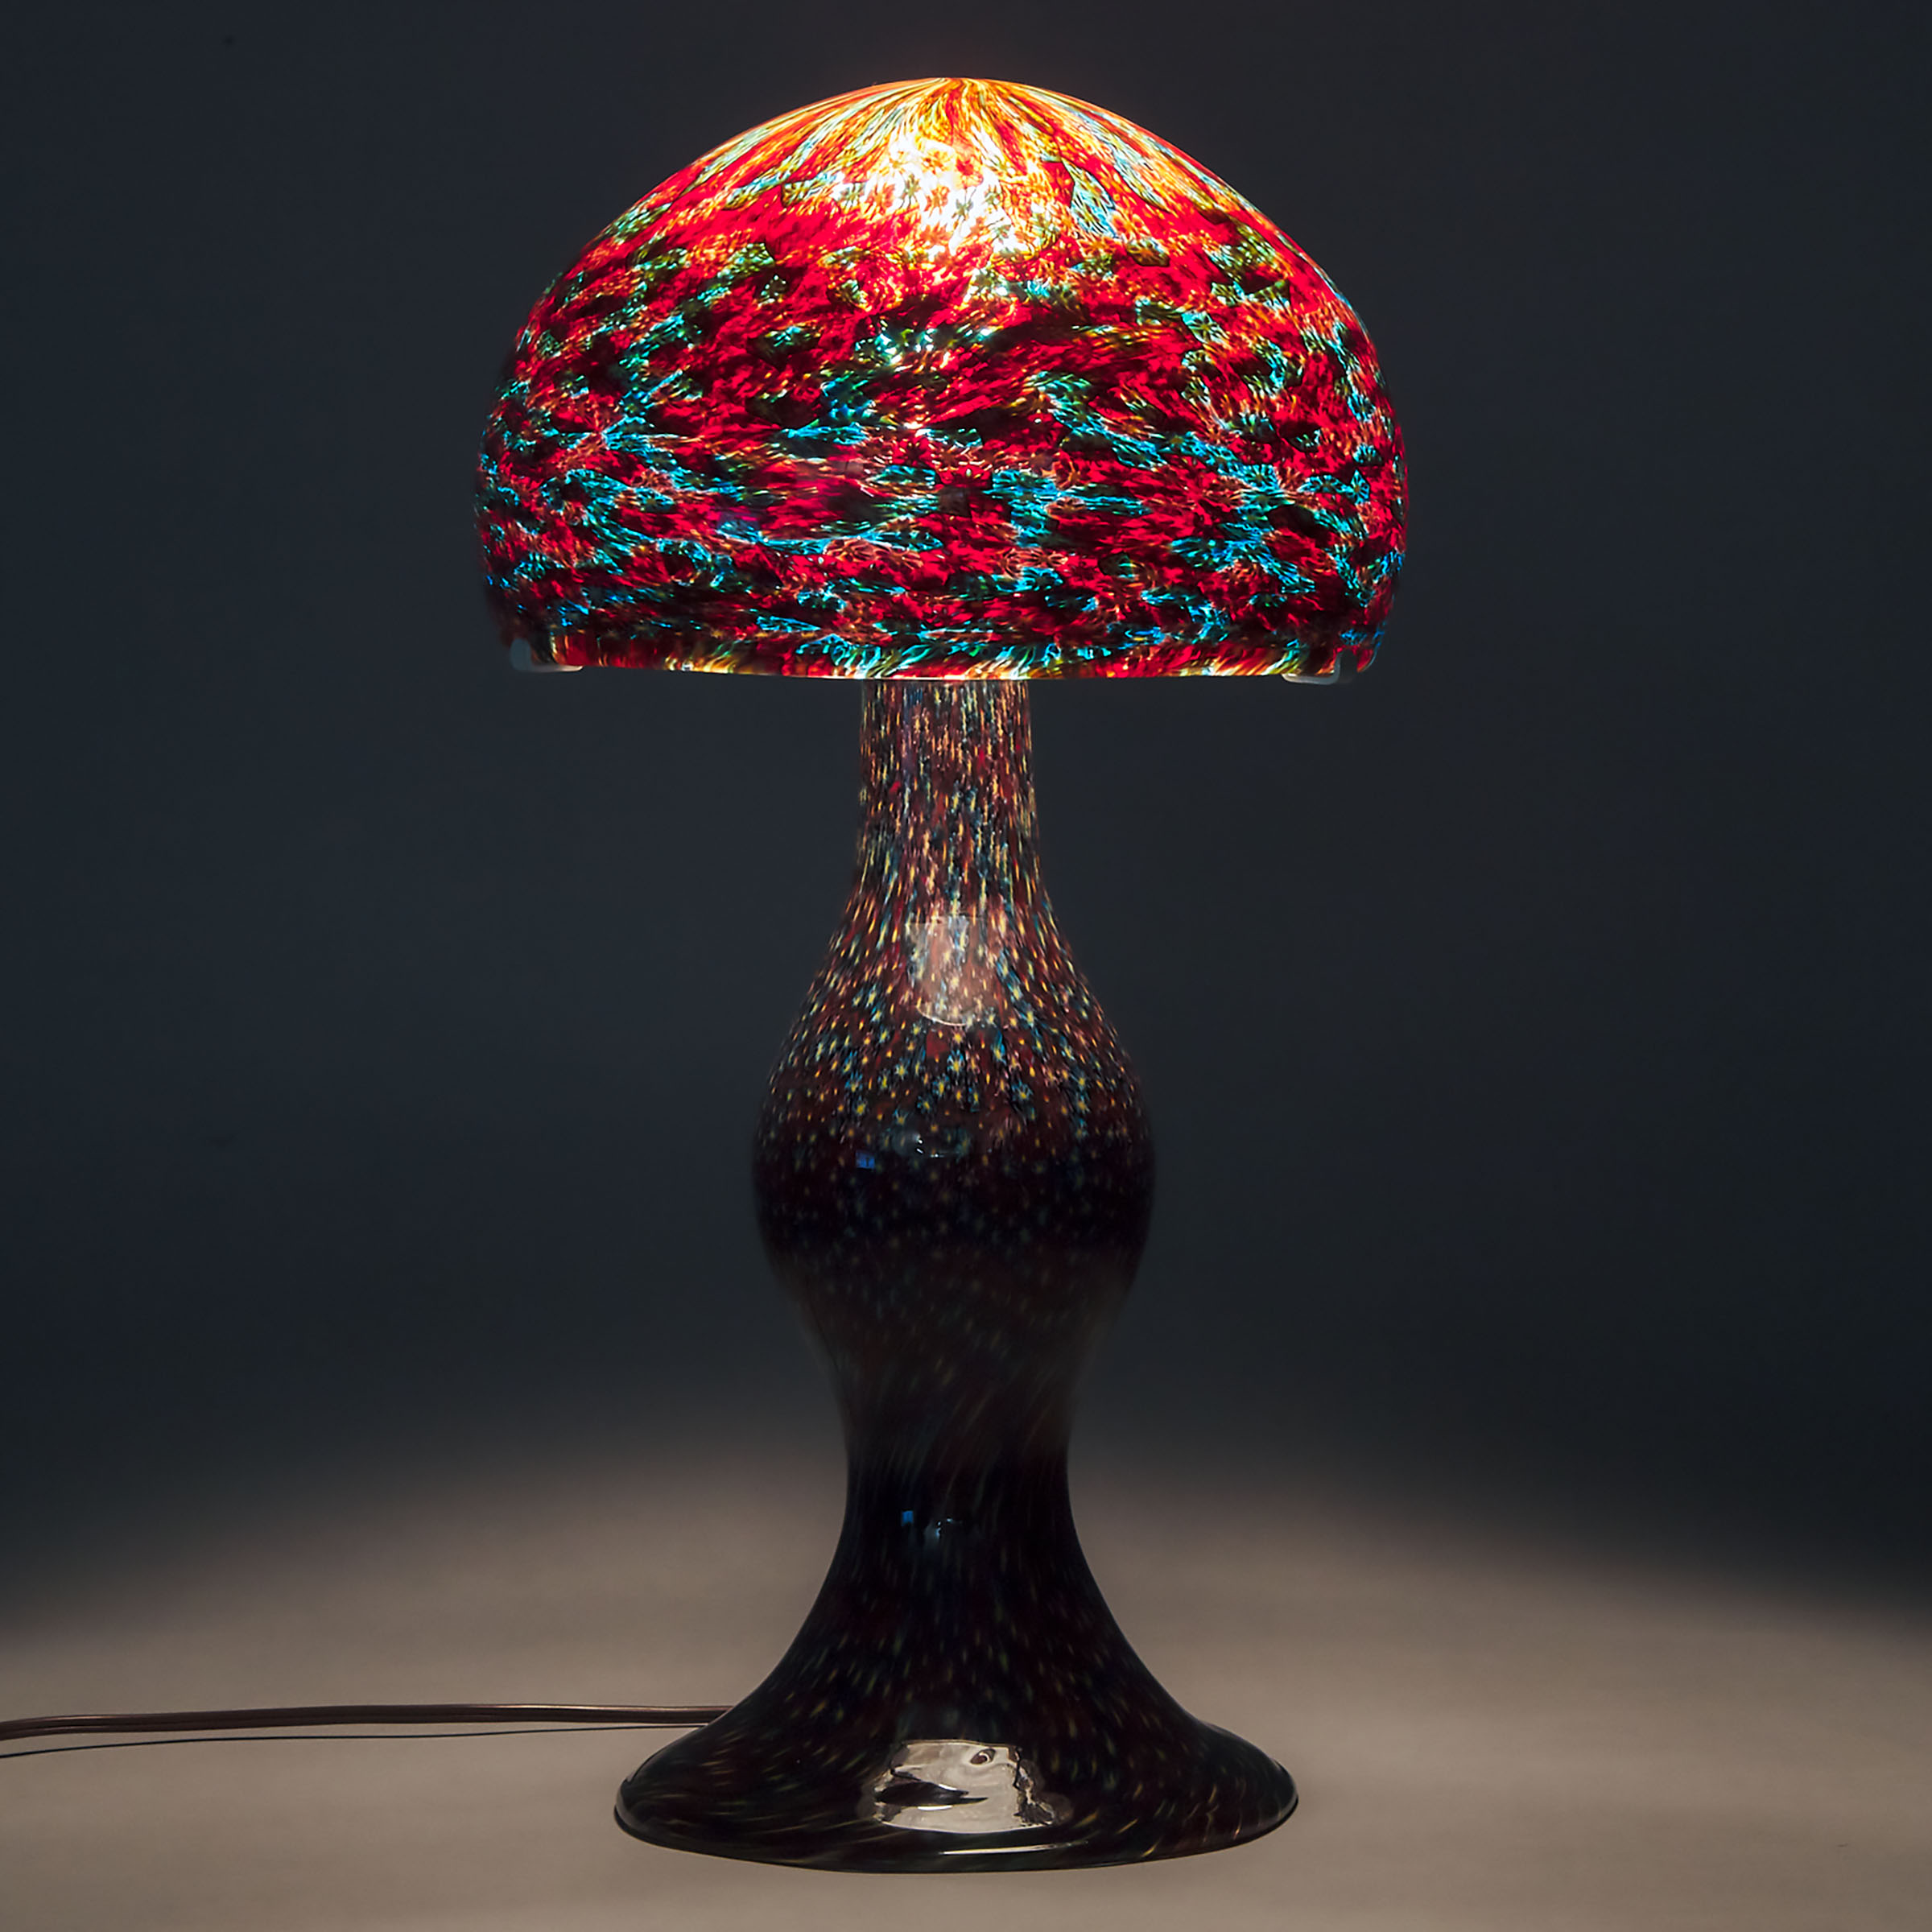 Continental Millefiori Glass Table Lamp, probably Murano, 20th century